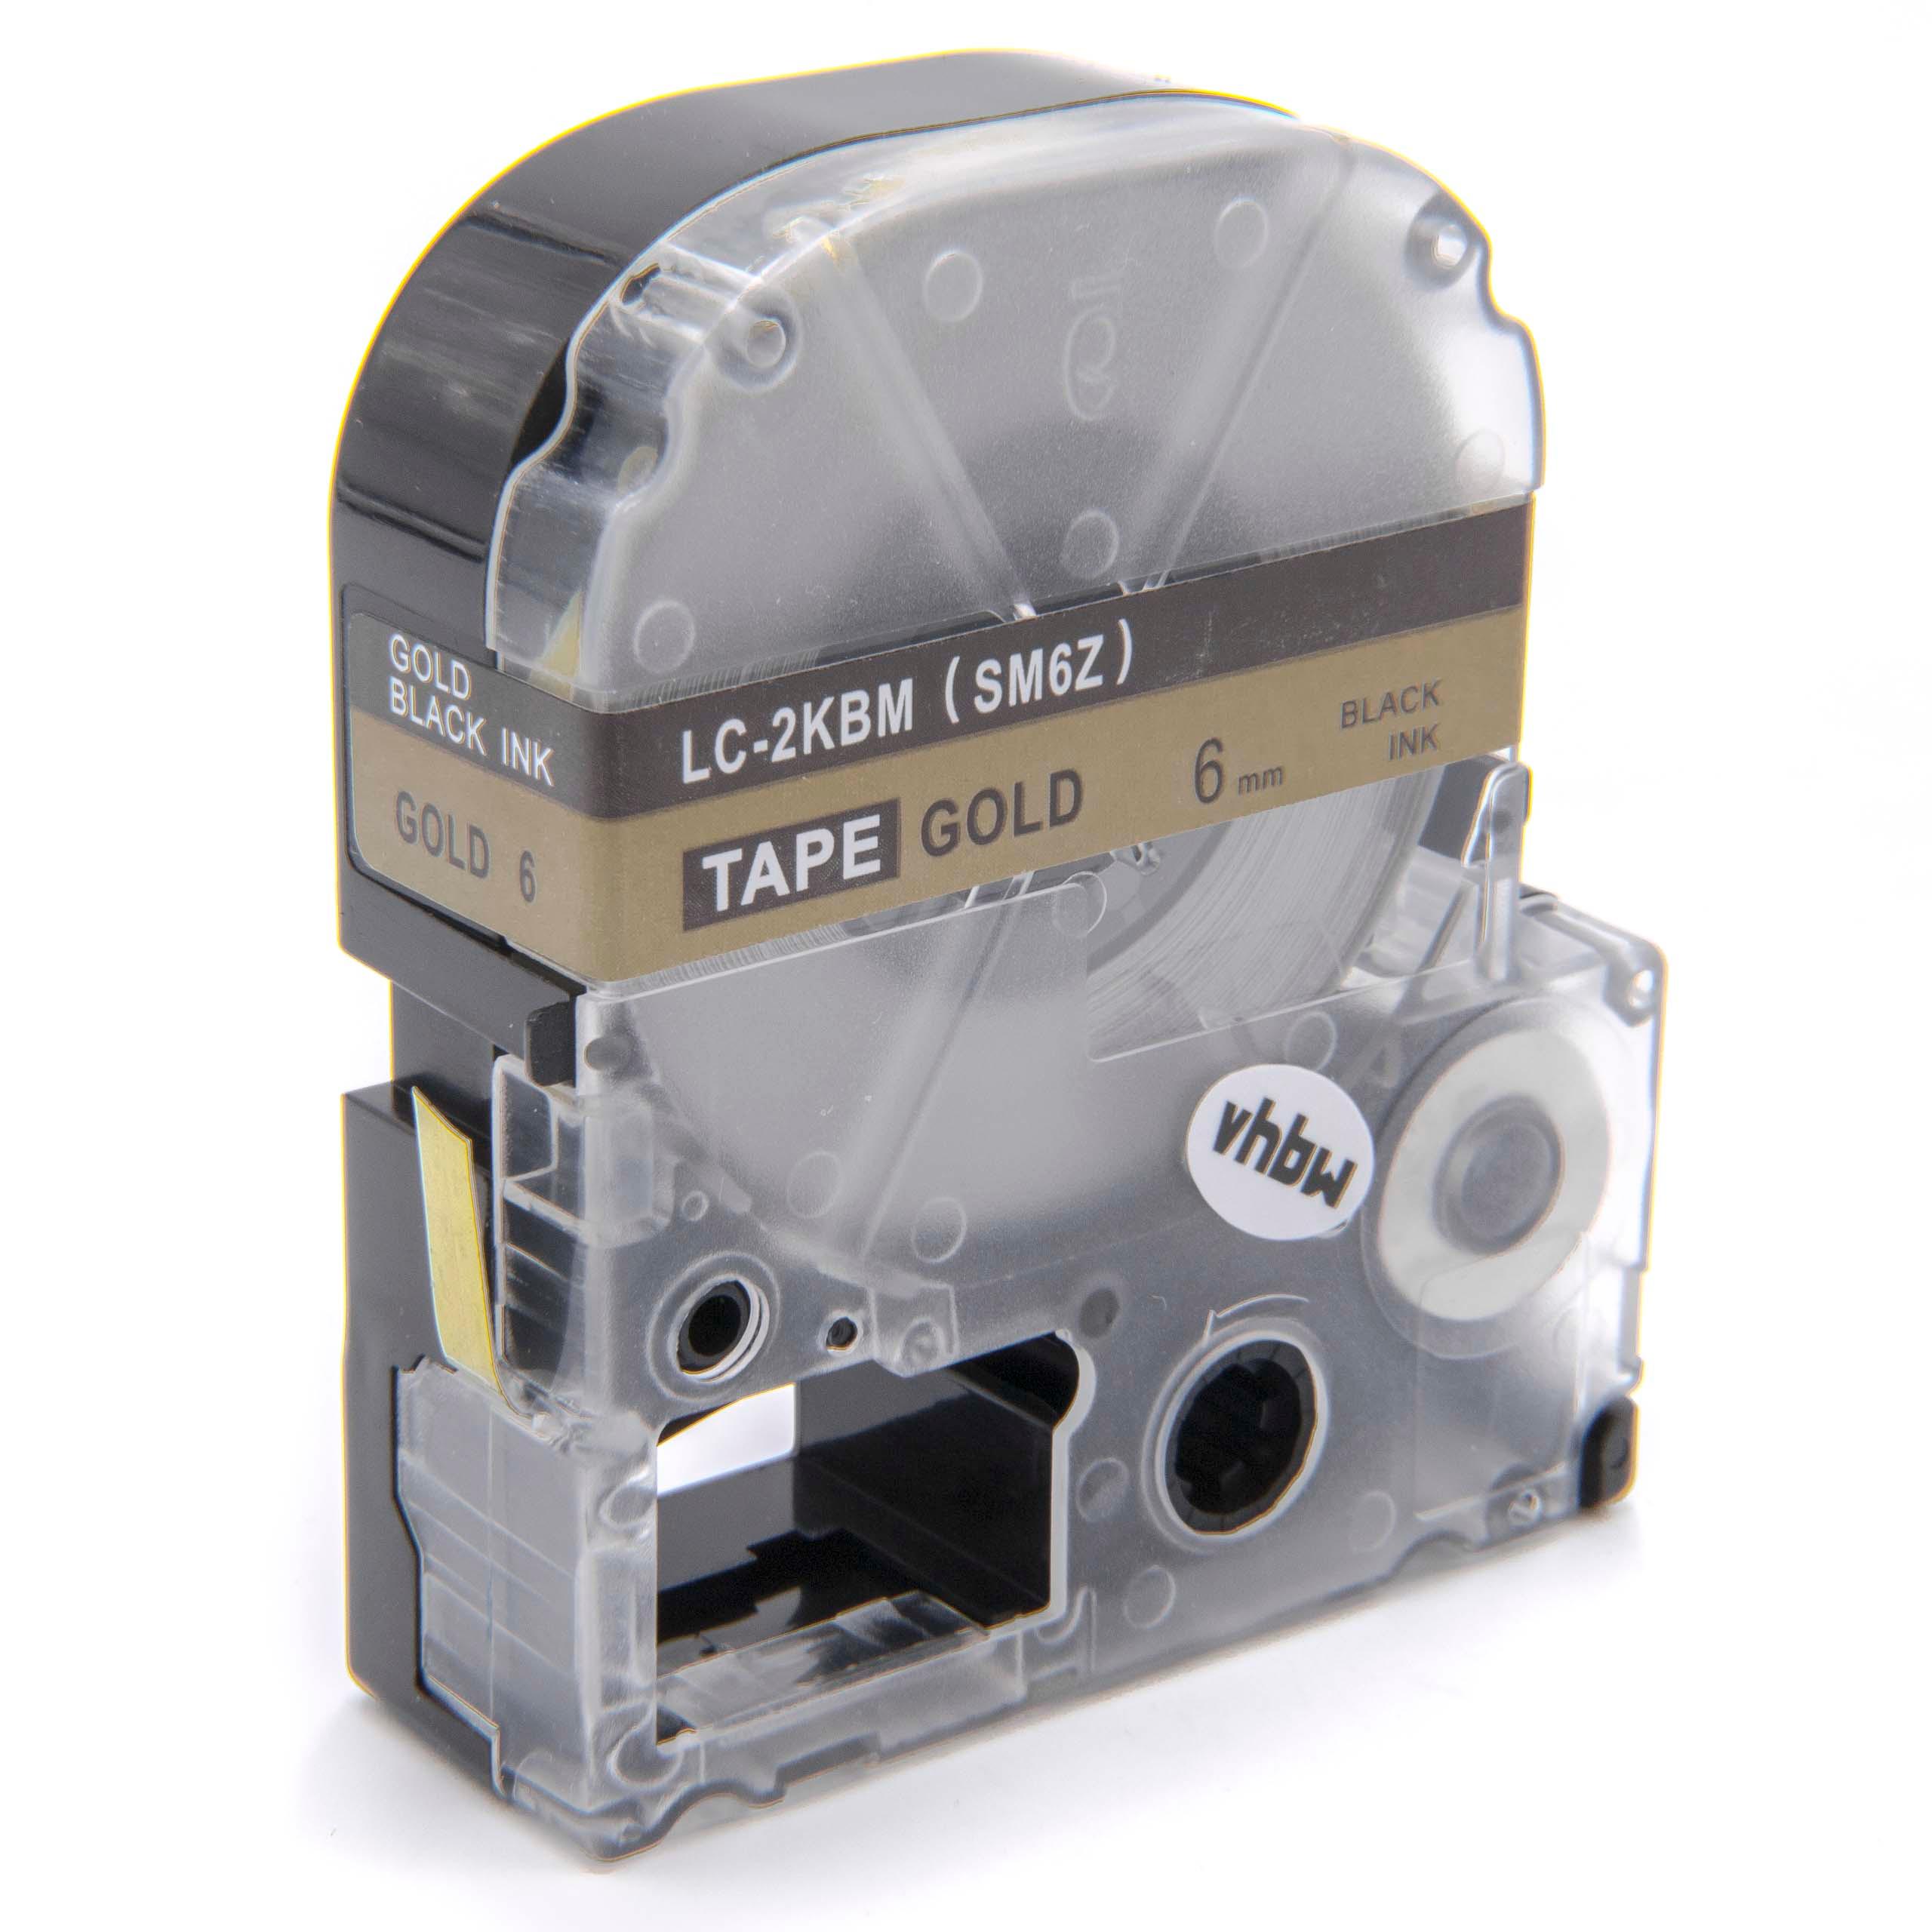 Cassetta nastro sostituisce Epson LC-2KBM per etichettatrice Epson 6mm nero su dorato